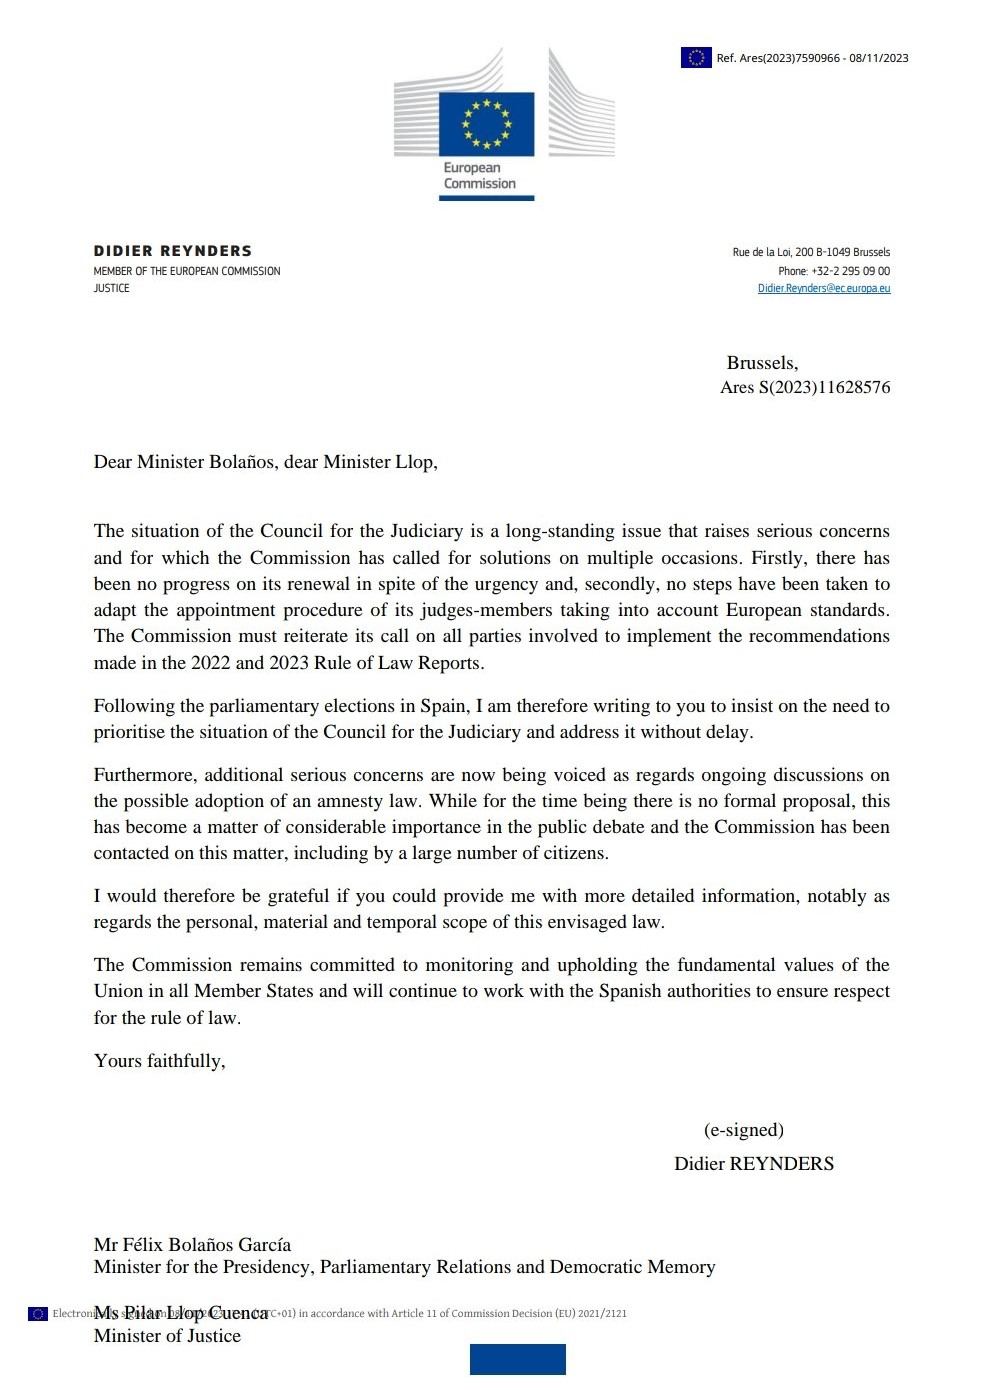 Carta Comissio Europea, Didier Reynders, Gobierno amnistía